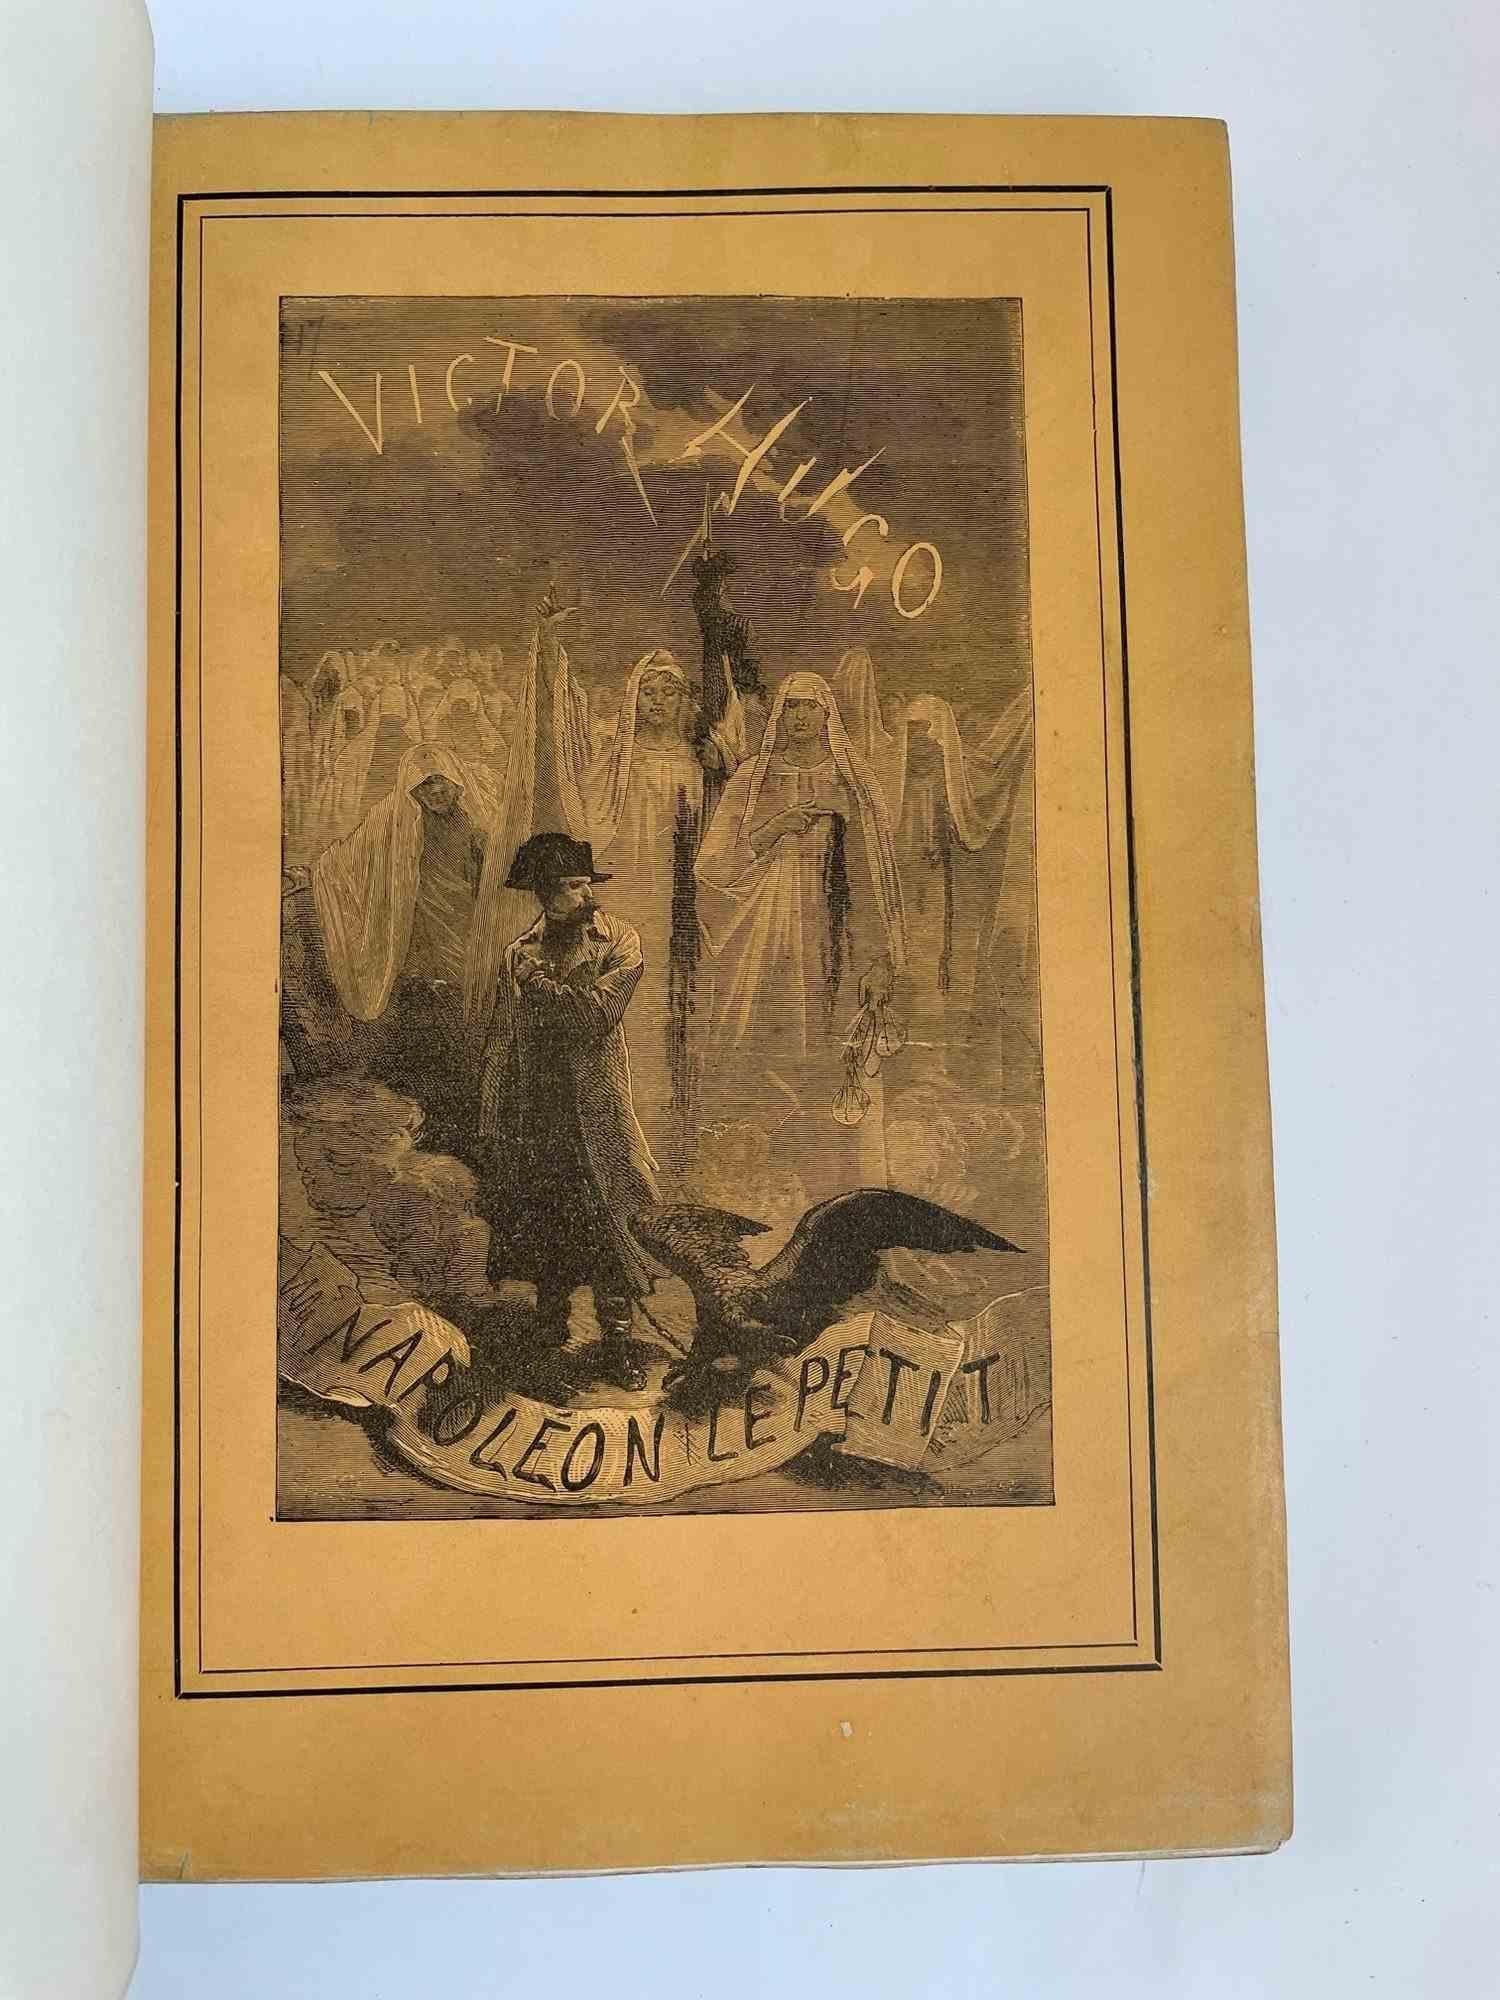 Napoléon le Petit - Rare Book by Victor Hugo - 1879 For Sale 2